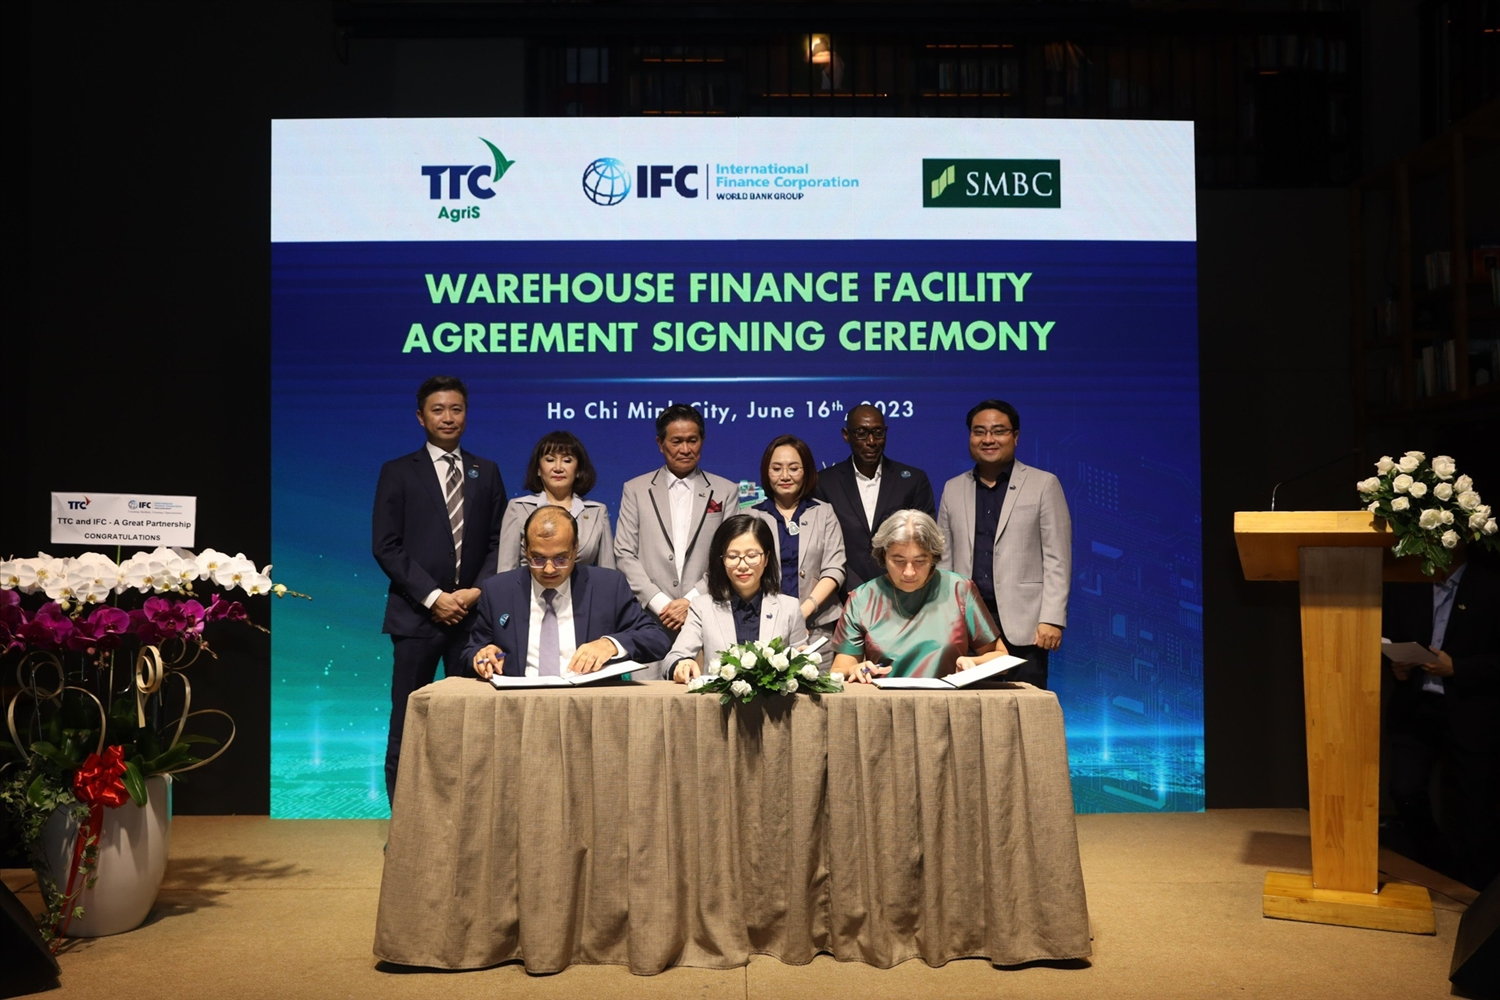 IFC và SMBC cung cấp khoản vay 40 triệu USD cho TTC AgriS